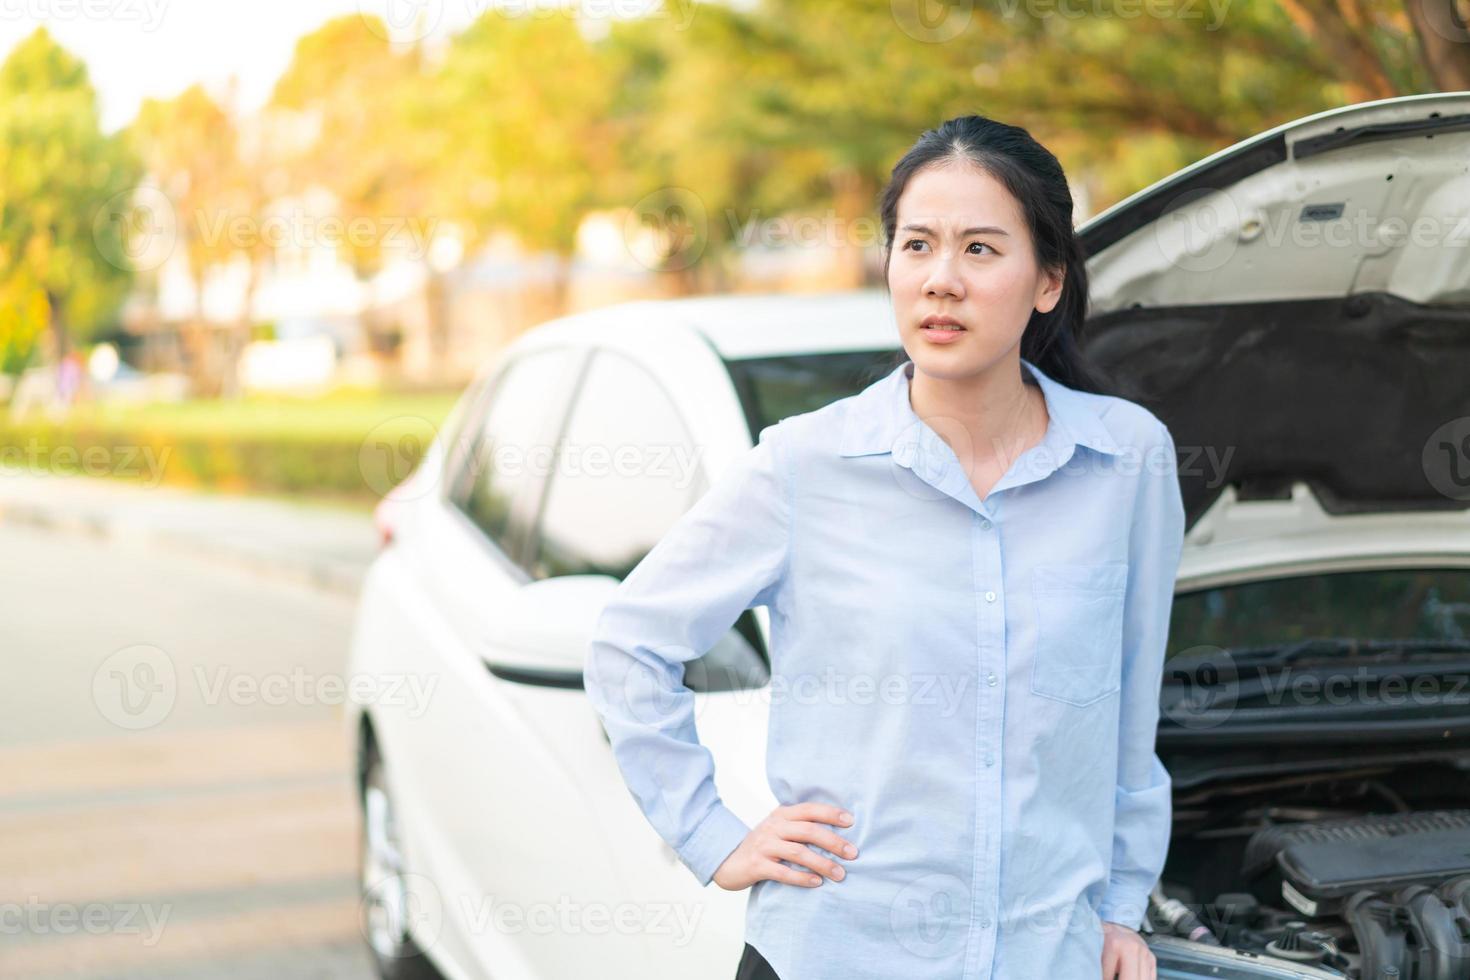 Mujer joven de pie cerca del coche averiado con el capó levantado que tiene problemas con su vehículo foto